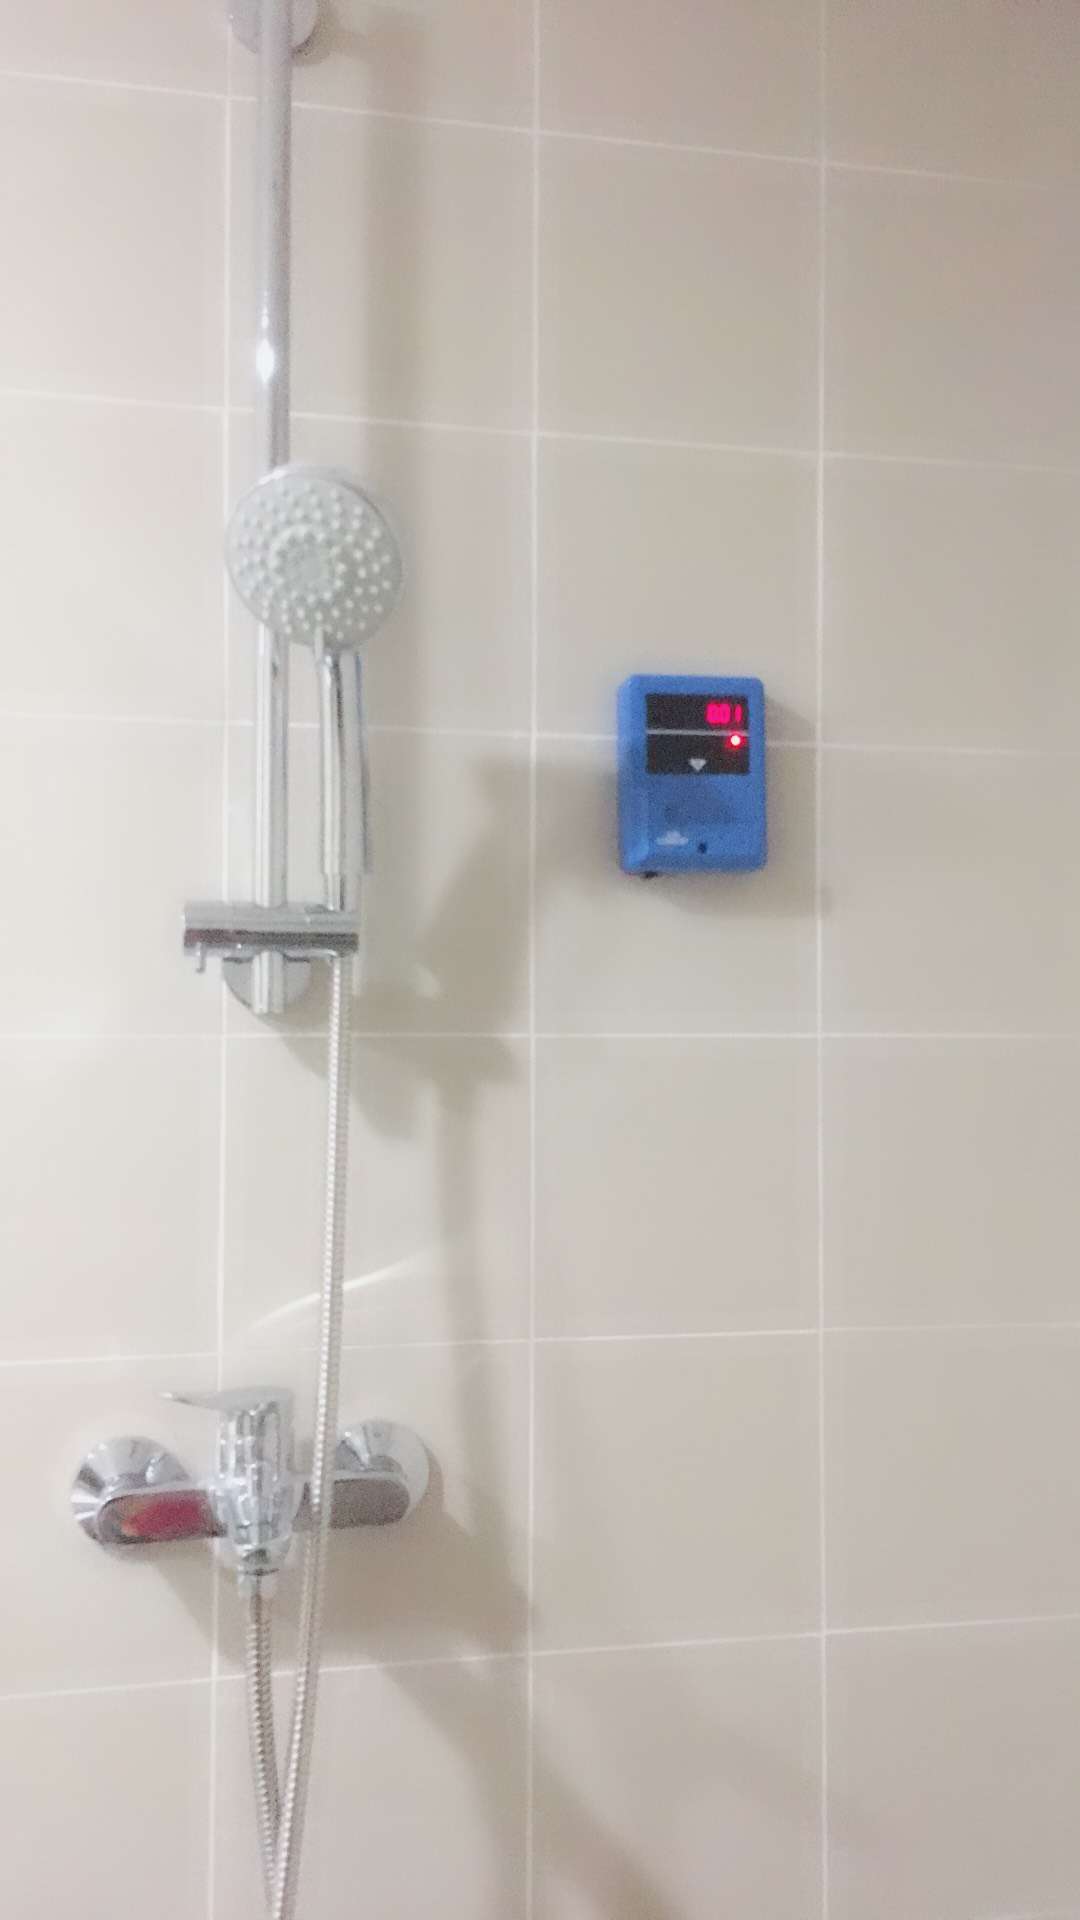 福建电热水器刷卡收费系统/IC取水刷卡计费水控机、插卡式淋浴水龙头